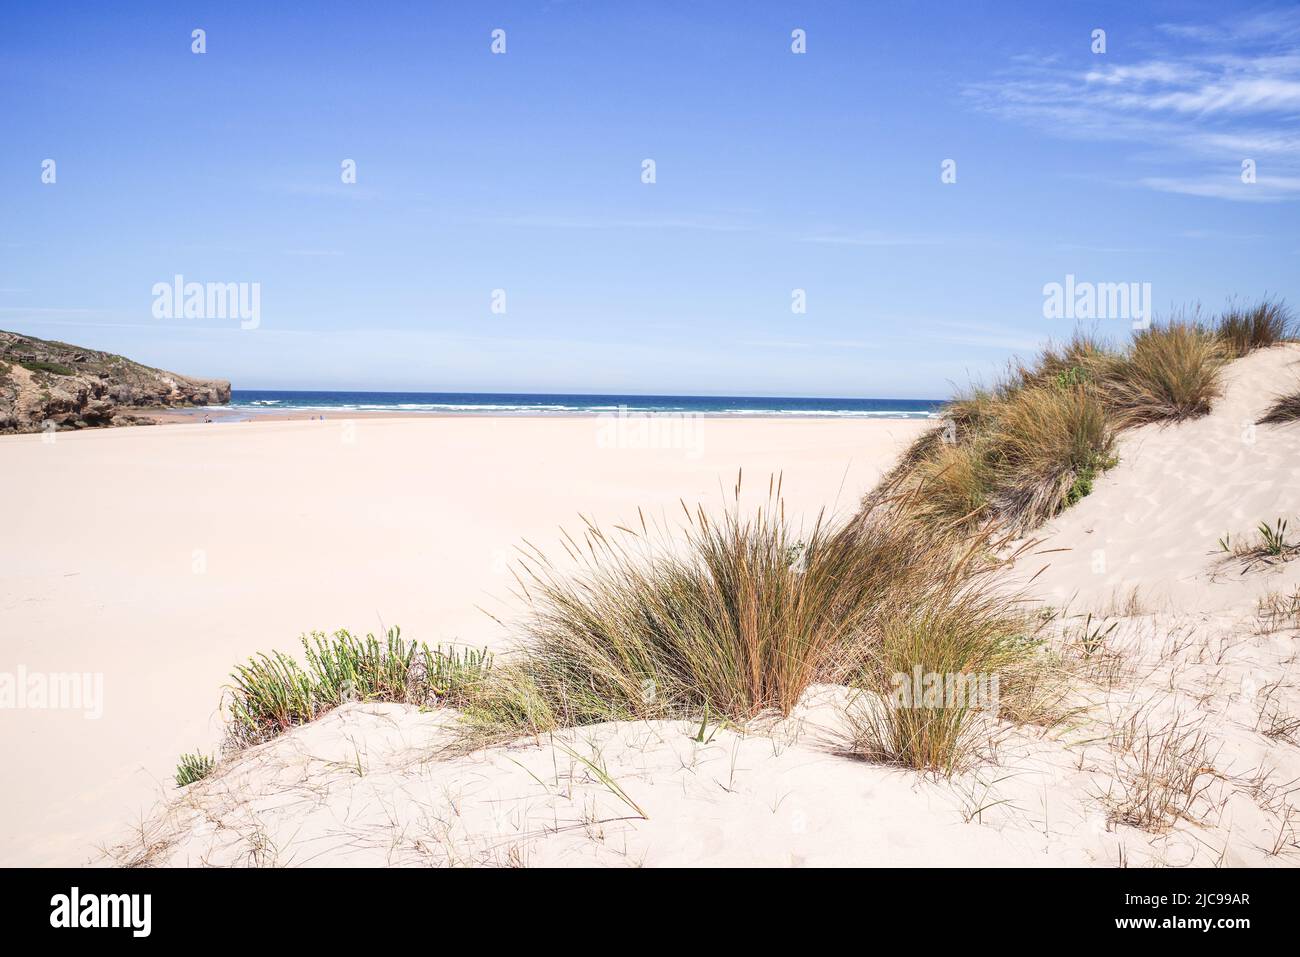 Pastos que crecen en dunas de arena a lo largo de la hermosa playa Praia da Amoreira - Algarve, Portugal Foto de stock